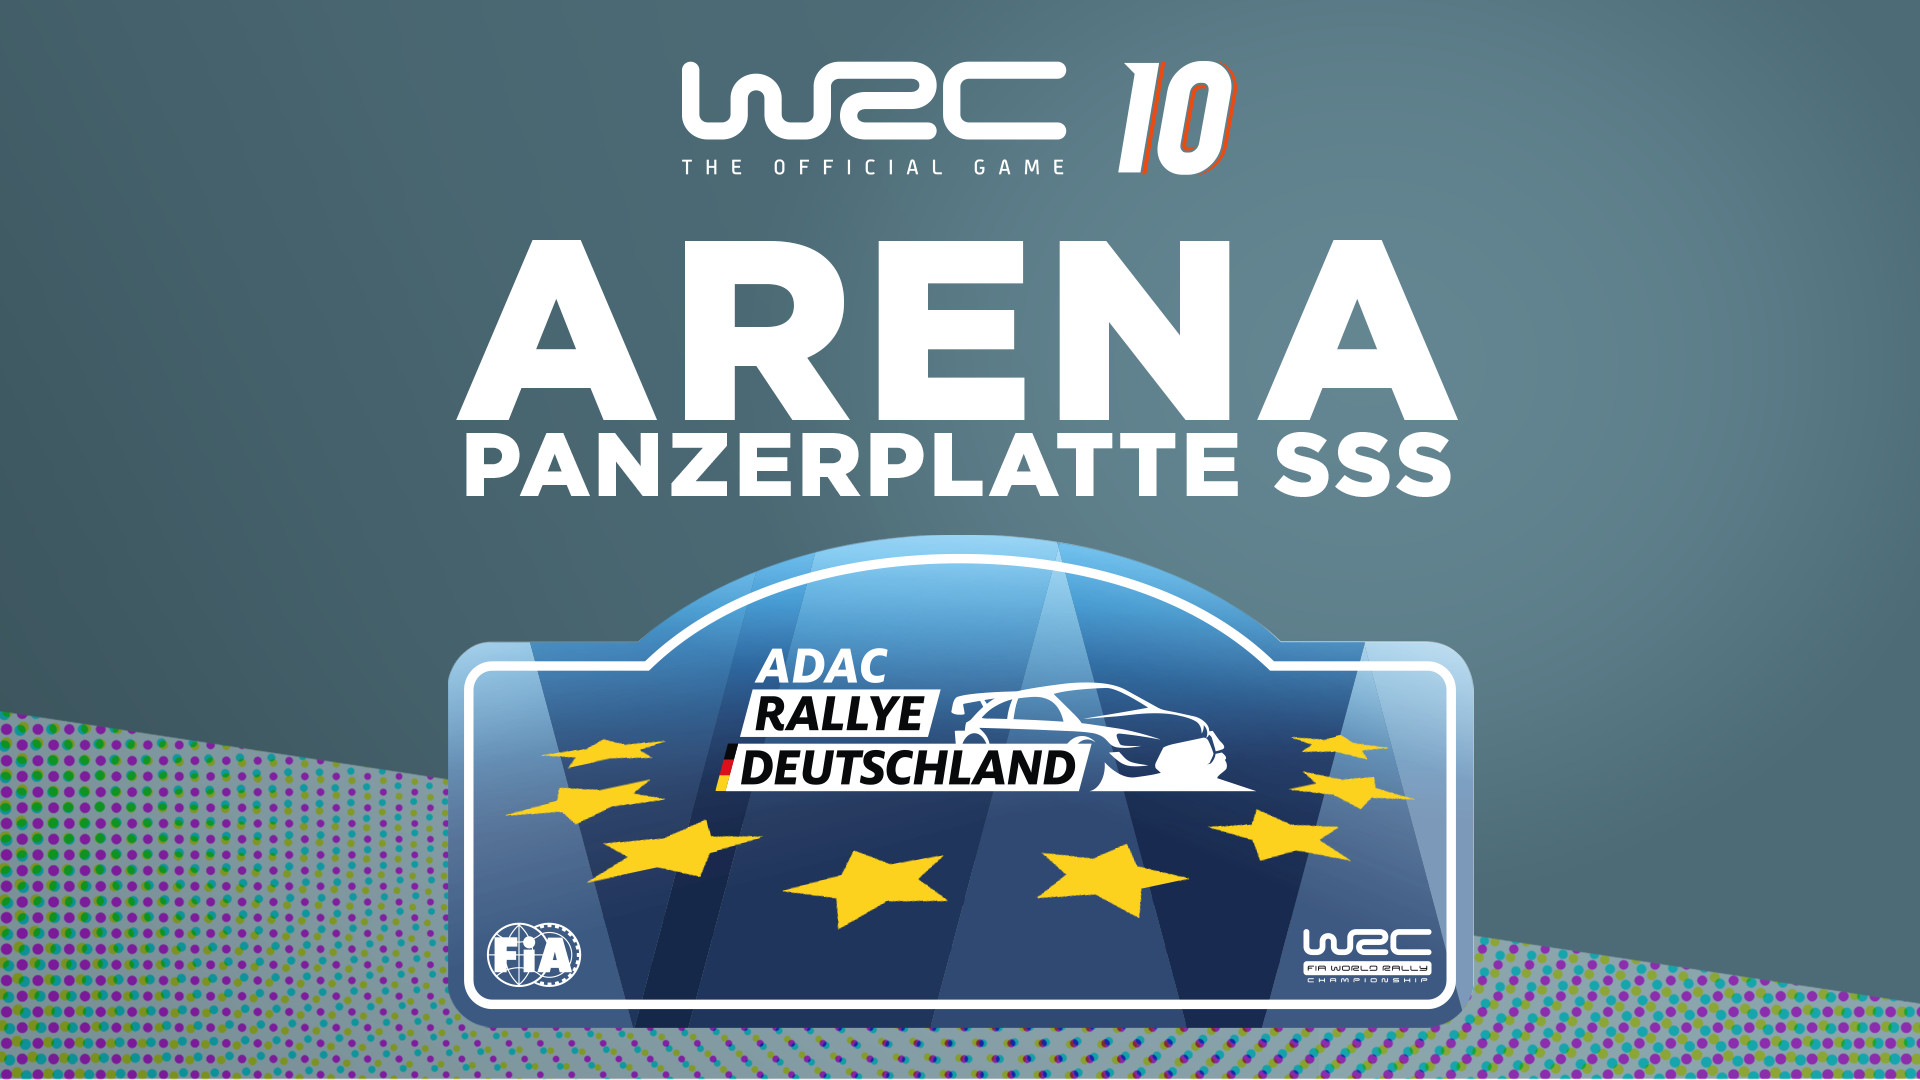 WRC 10 Arena Panzerplatte SSS Featured Screenshot #1